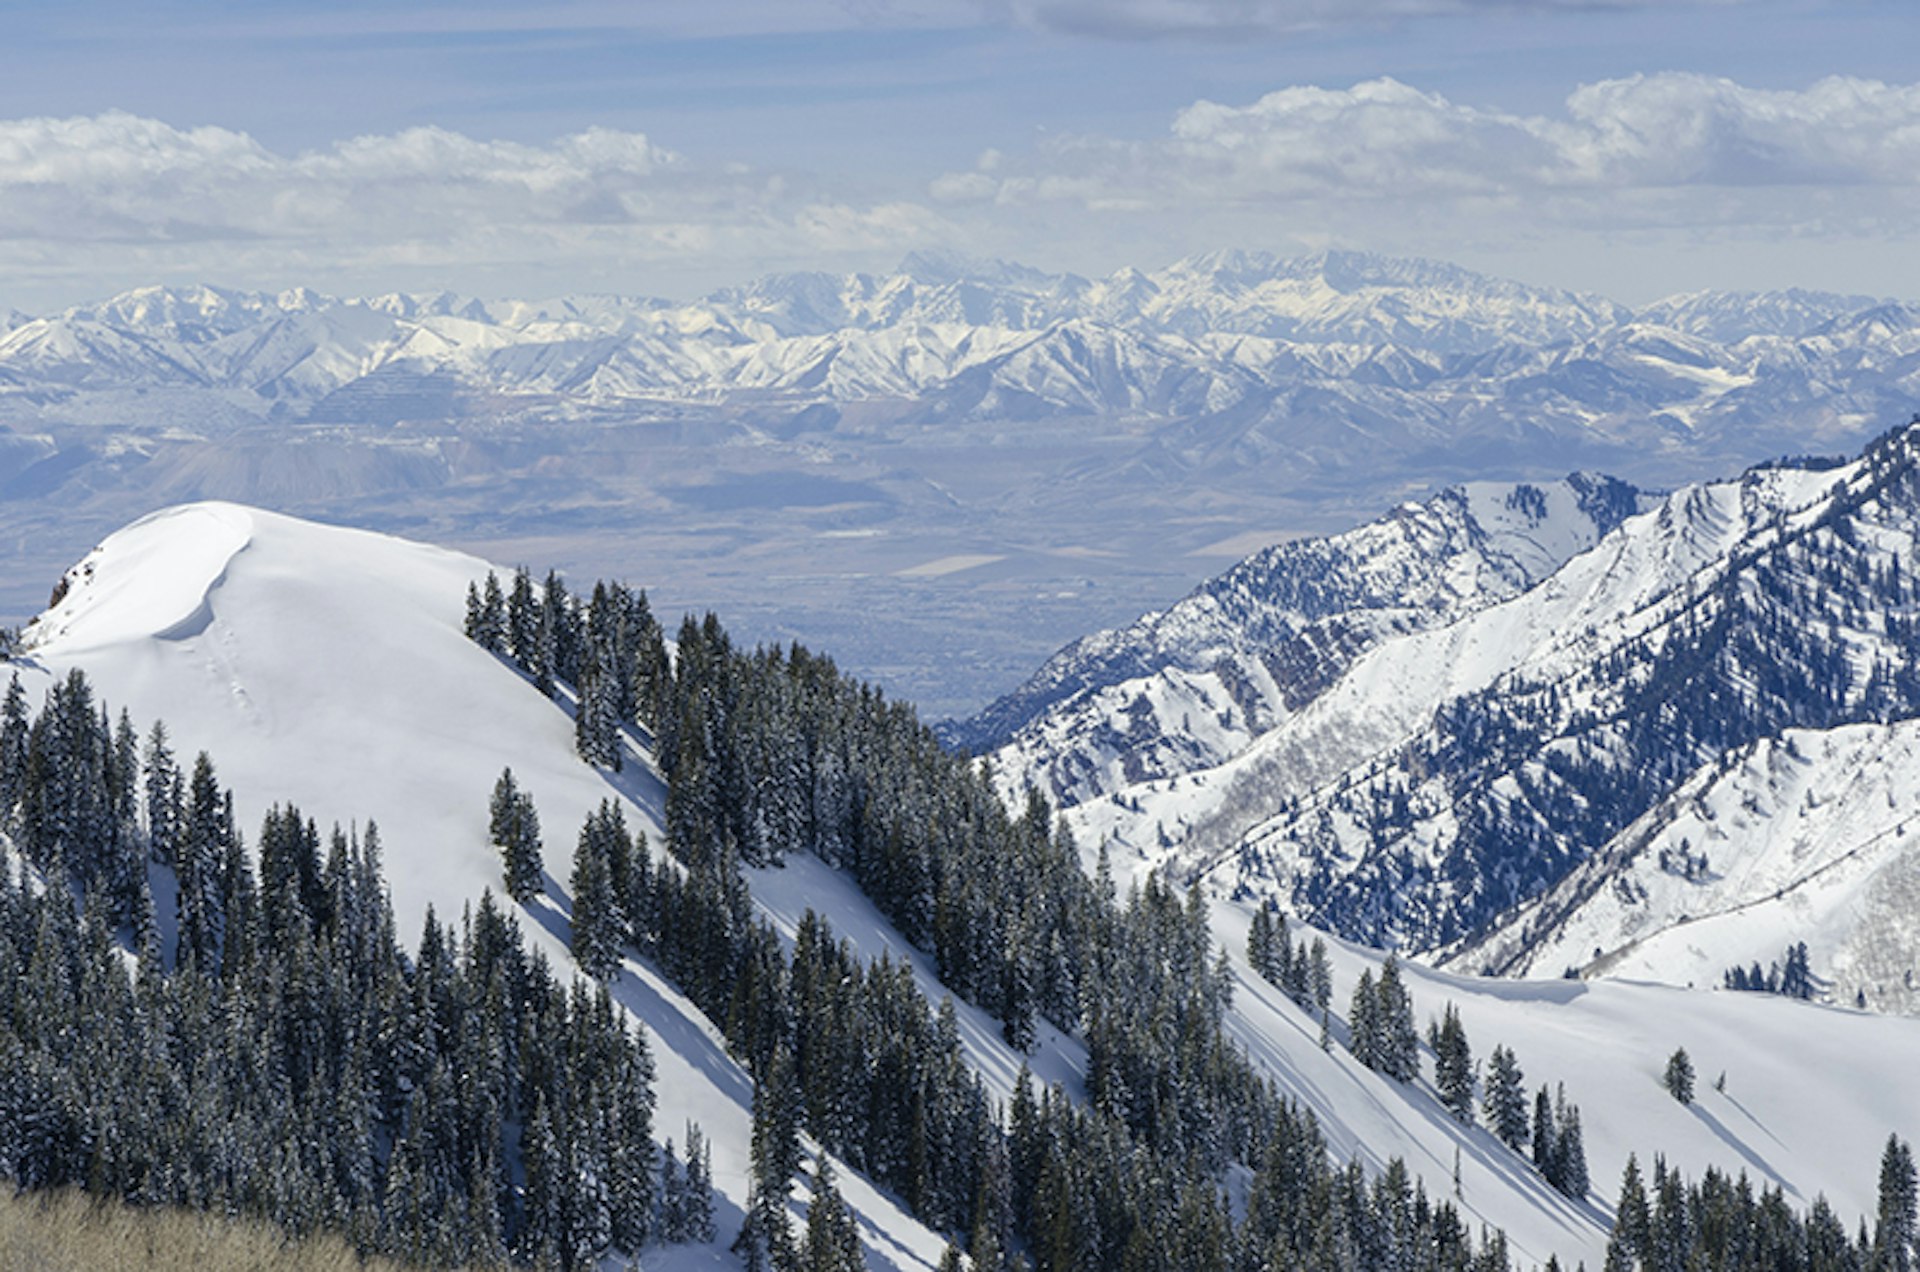 Watatch Range. Photo by Scott Cramer / Getty Images